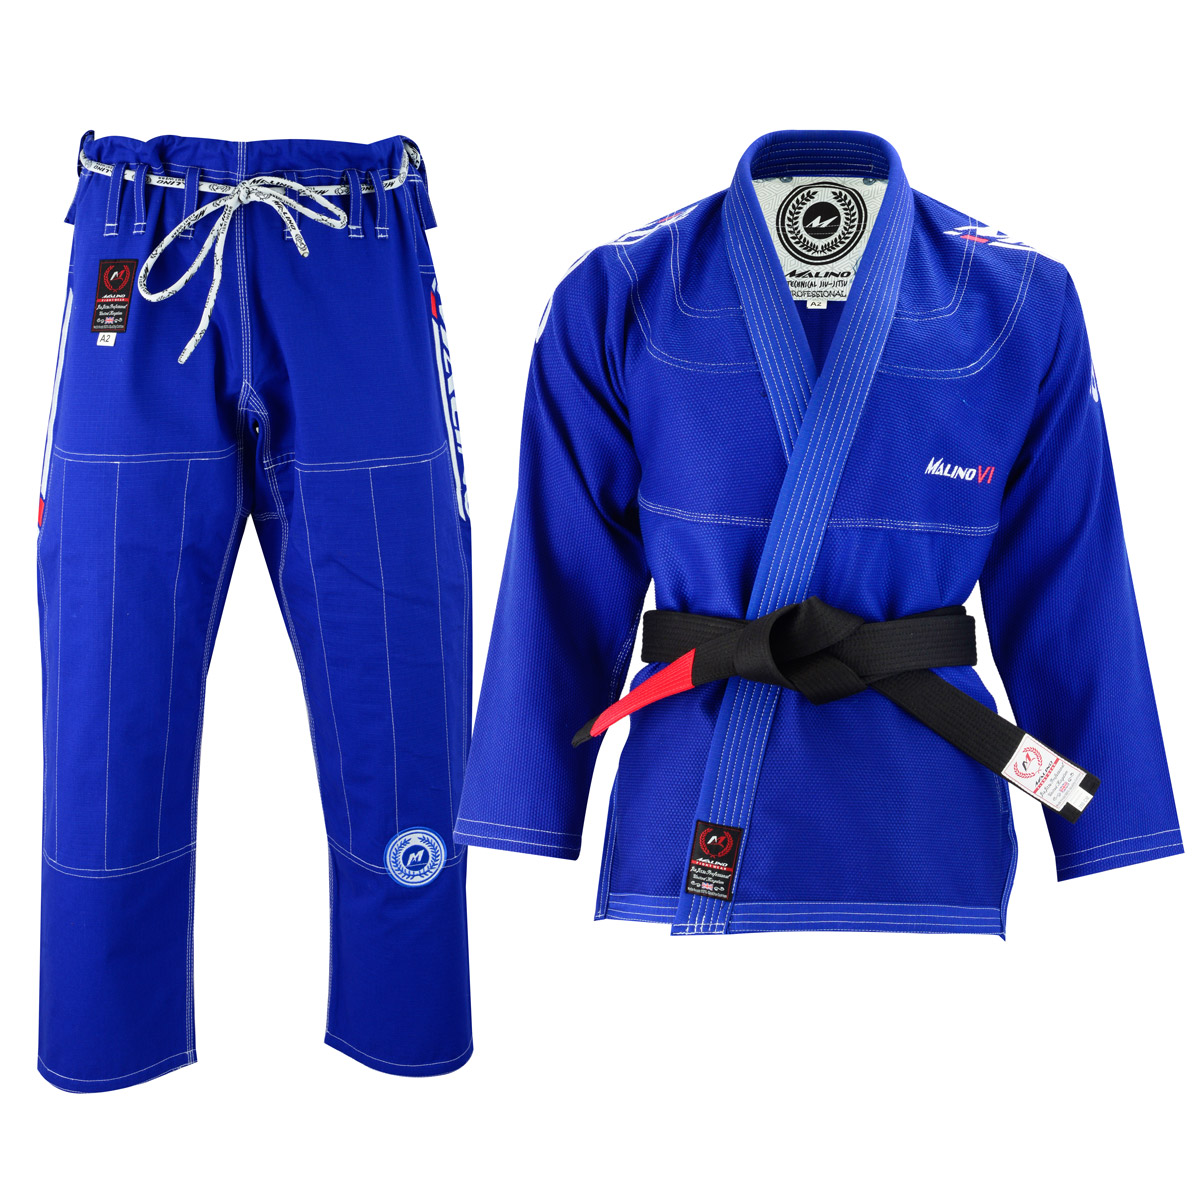 Malino BJJ Gi Kimono Royal Blue 550GSM 100% Cotton Pearl Weave 10oz Ripstop Pant 